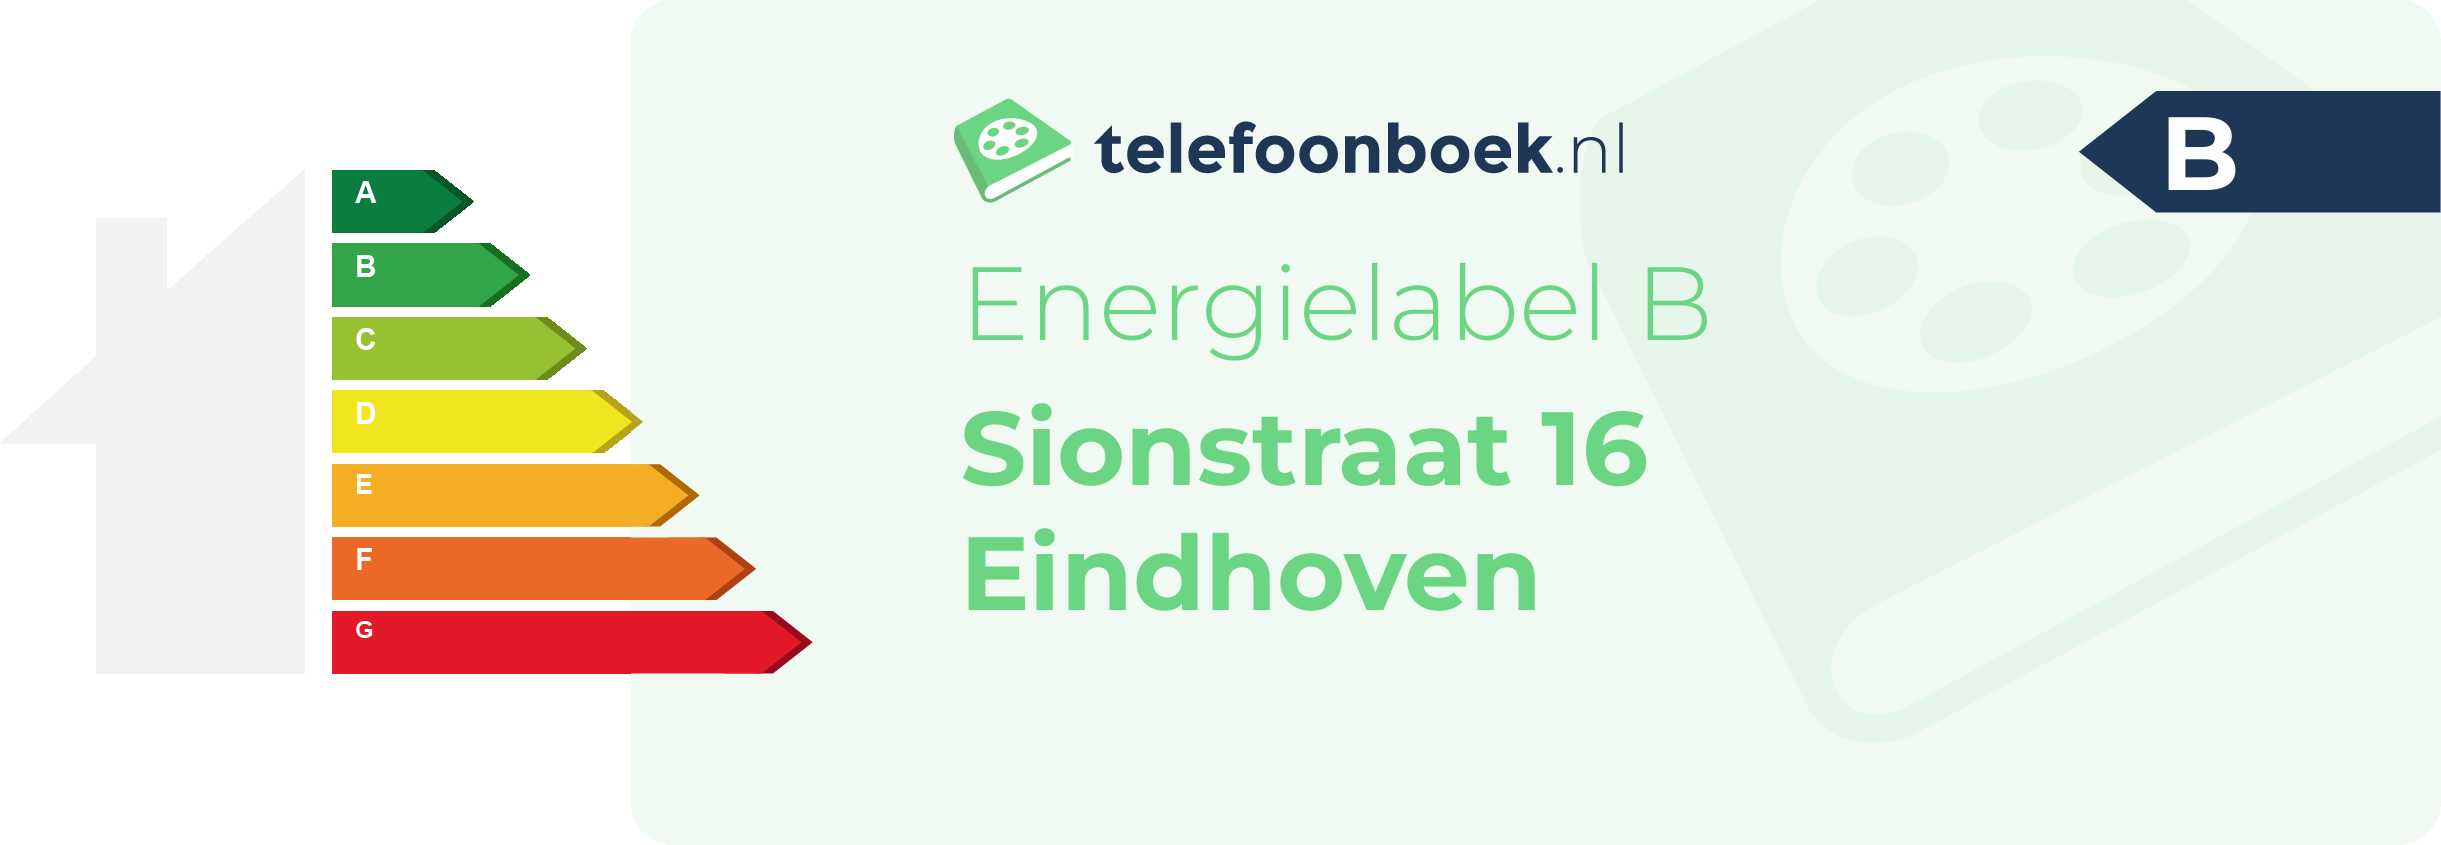 Energielabel Sionstraat 16 Eindhoven